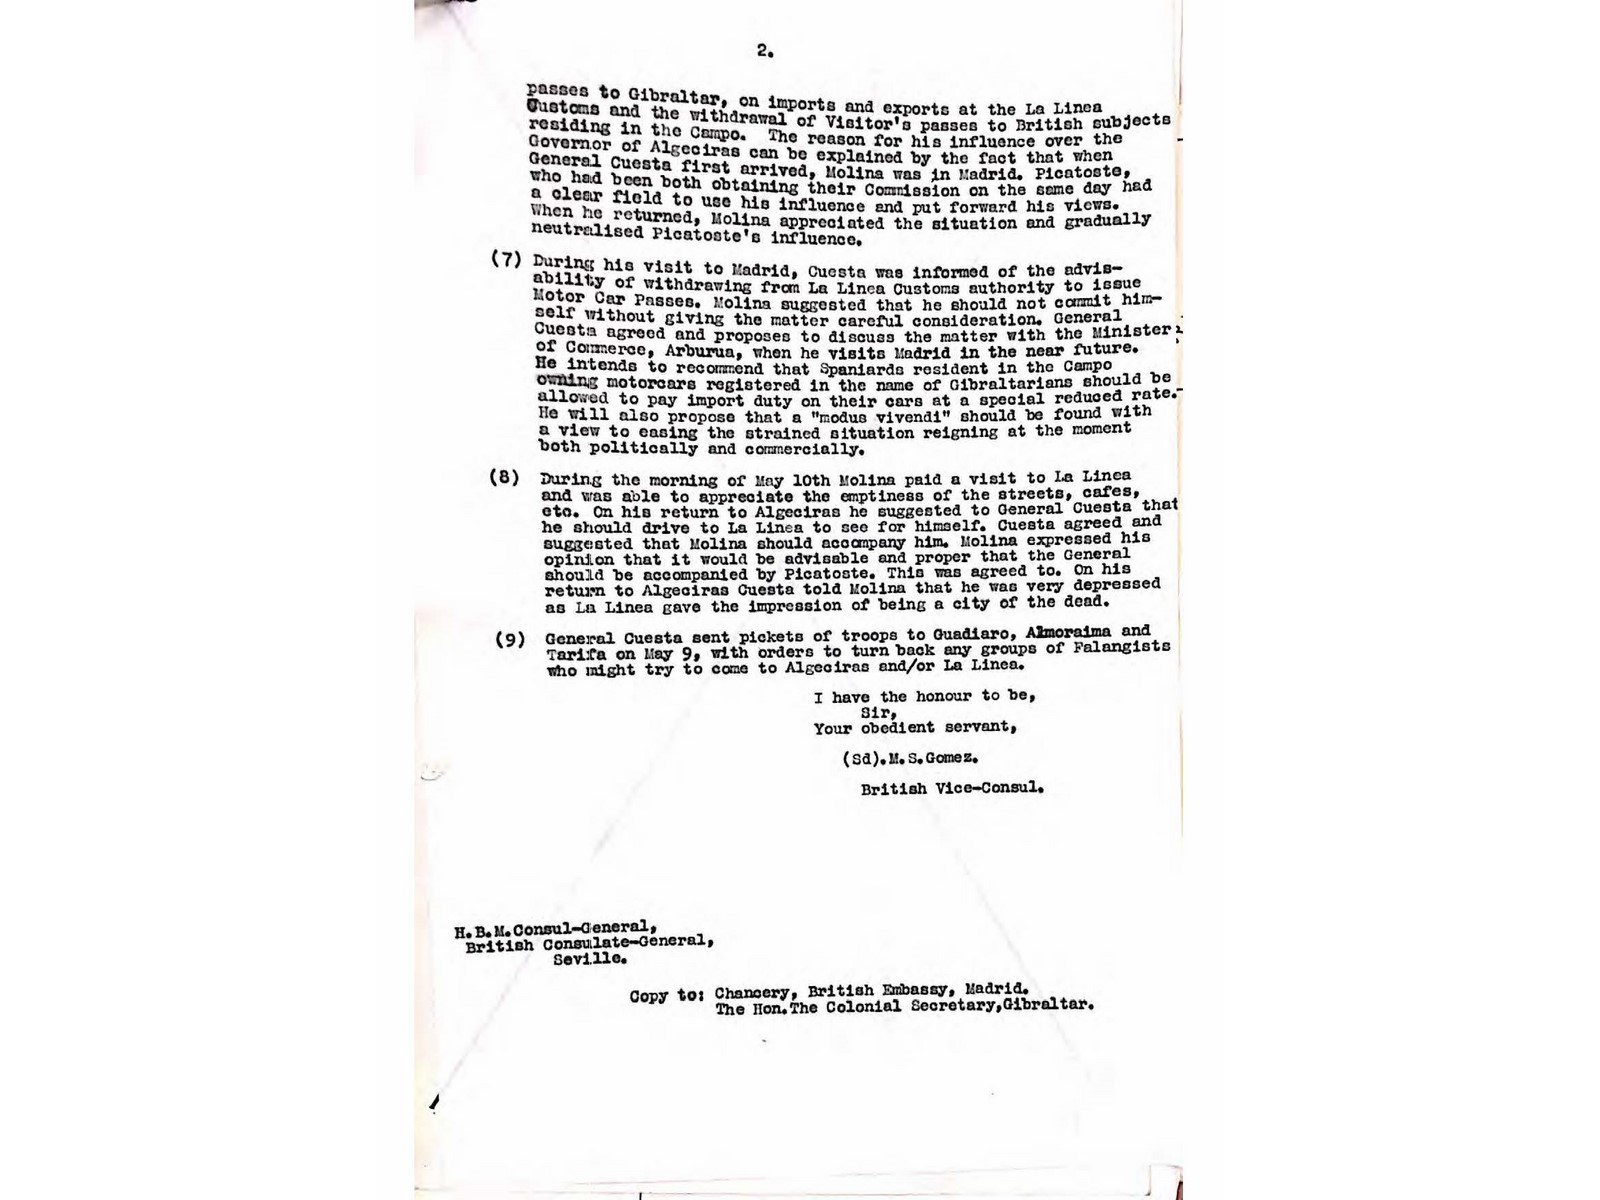 19540516 Carta del vicecónsul británico de La Línea_Página_2.jpg